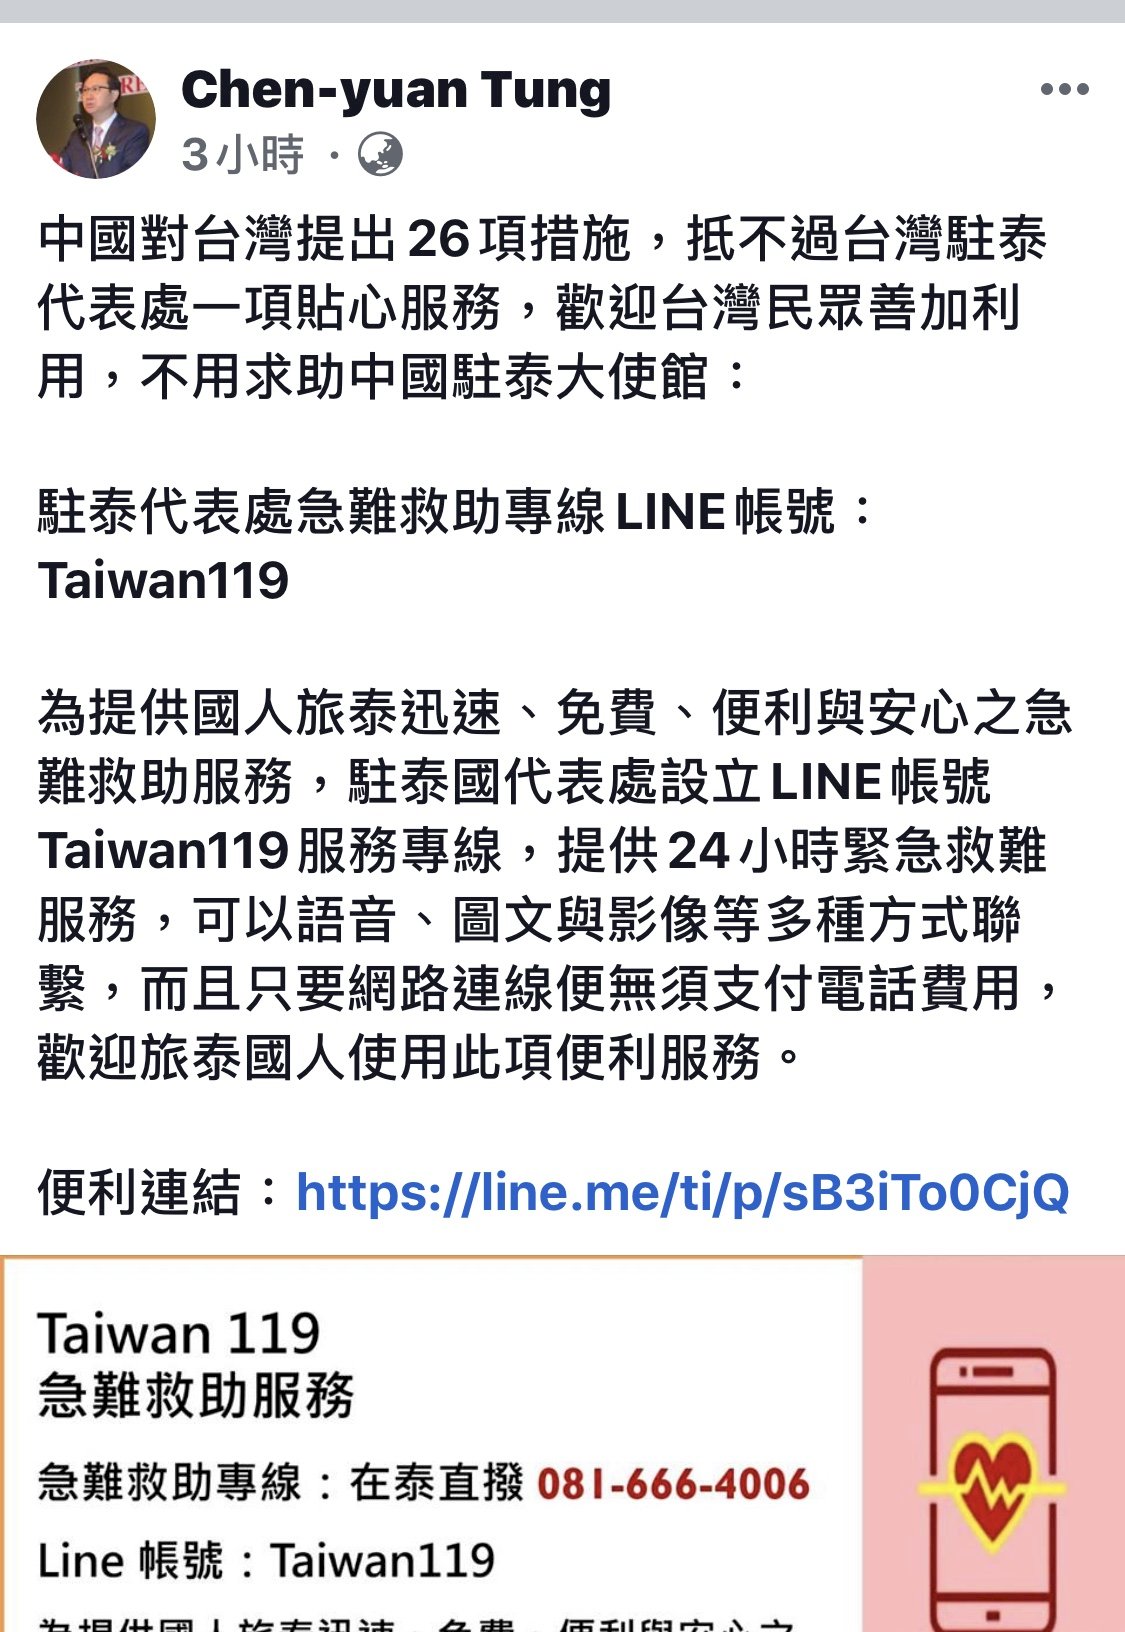 ทูตไต้หวันประจำประเทศไทยย้ำ ขอความช่วยเหลือสถานทูตไต้หวันประจำประเทศไทย ทางไลน์ Taiwan 119 สะดวกกว่ากันเยอะ